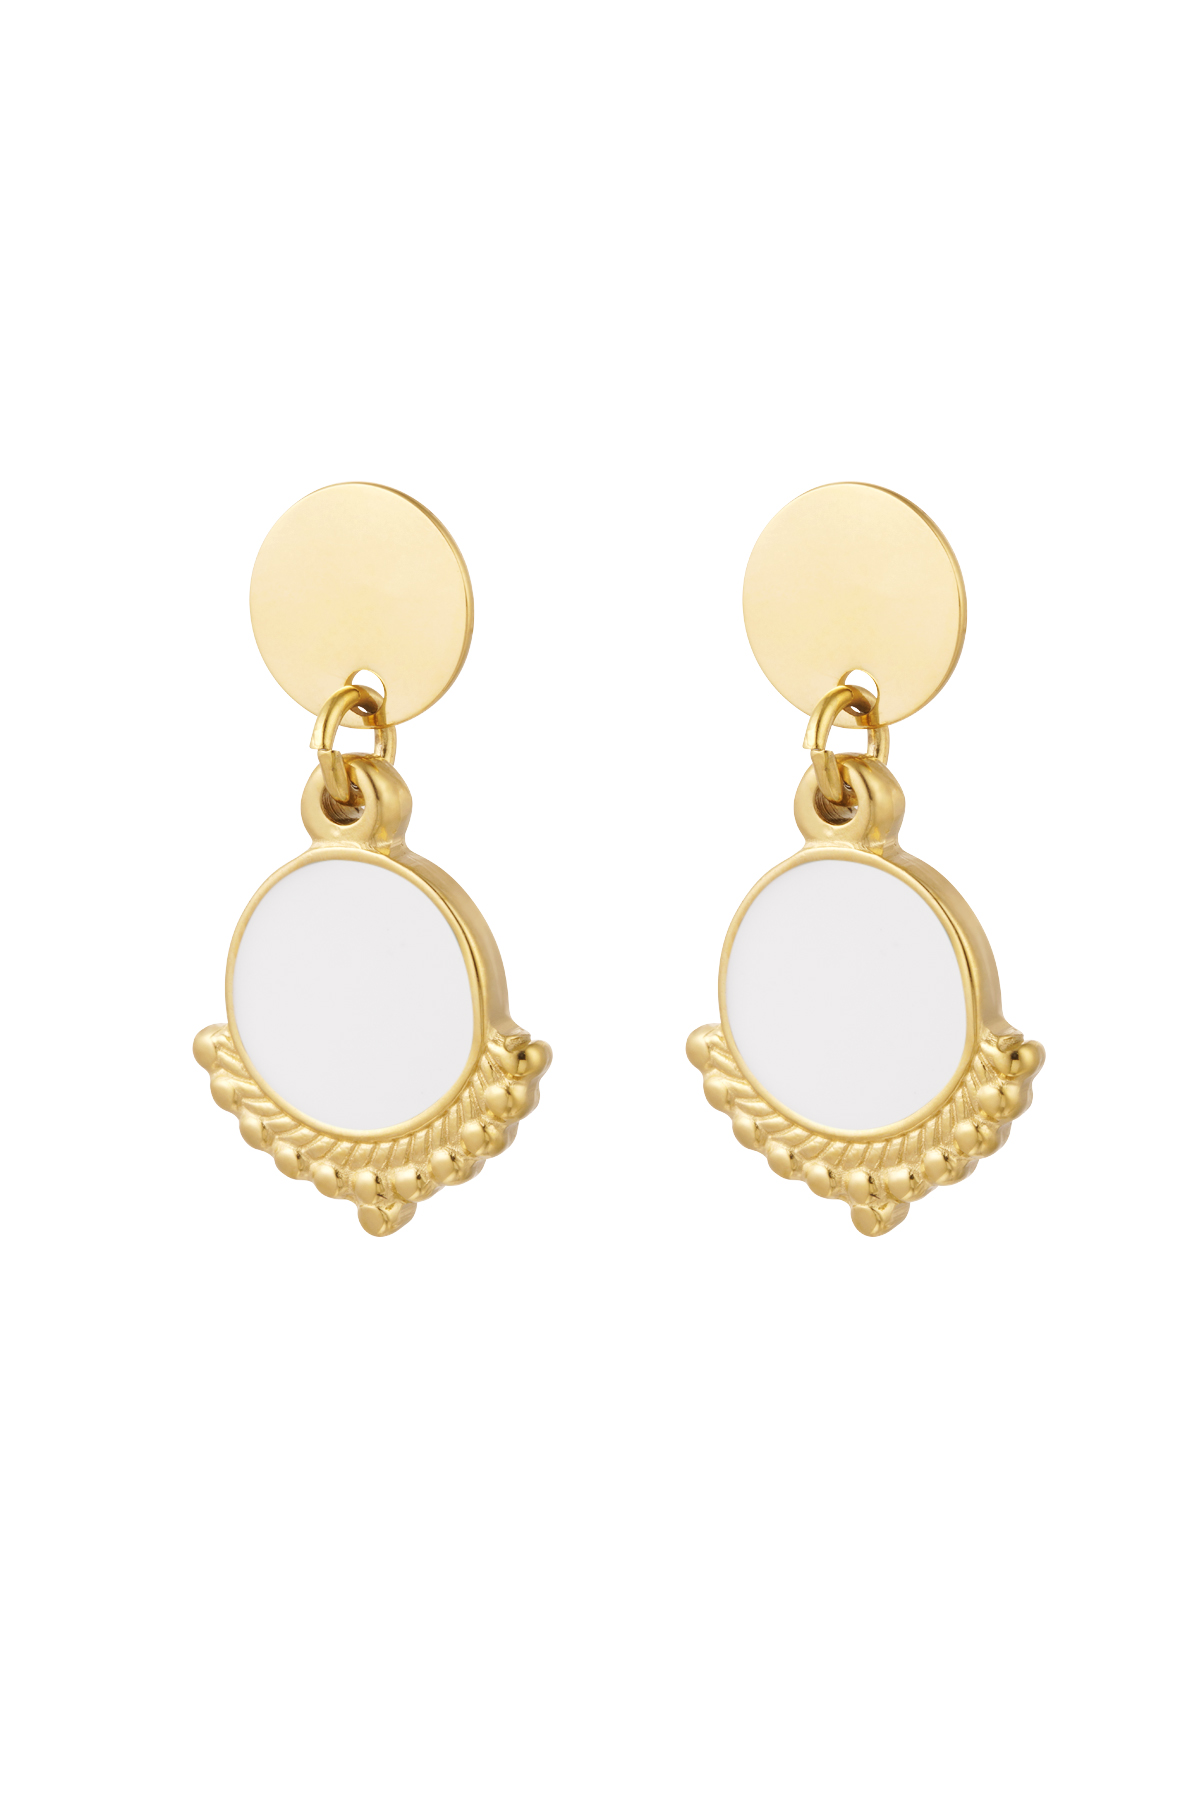 Ohrringe elegant mit Farbe - Gold/Weiß h5 